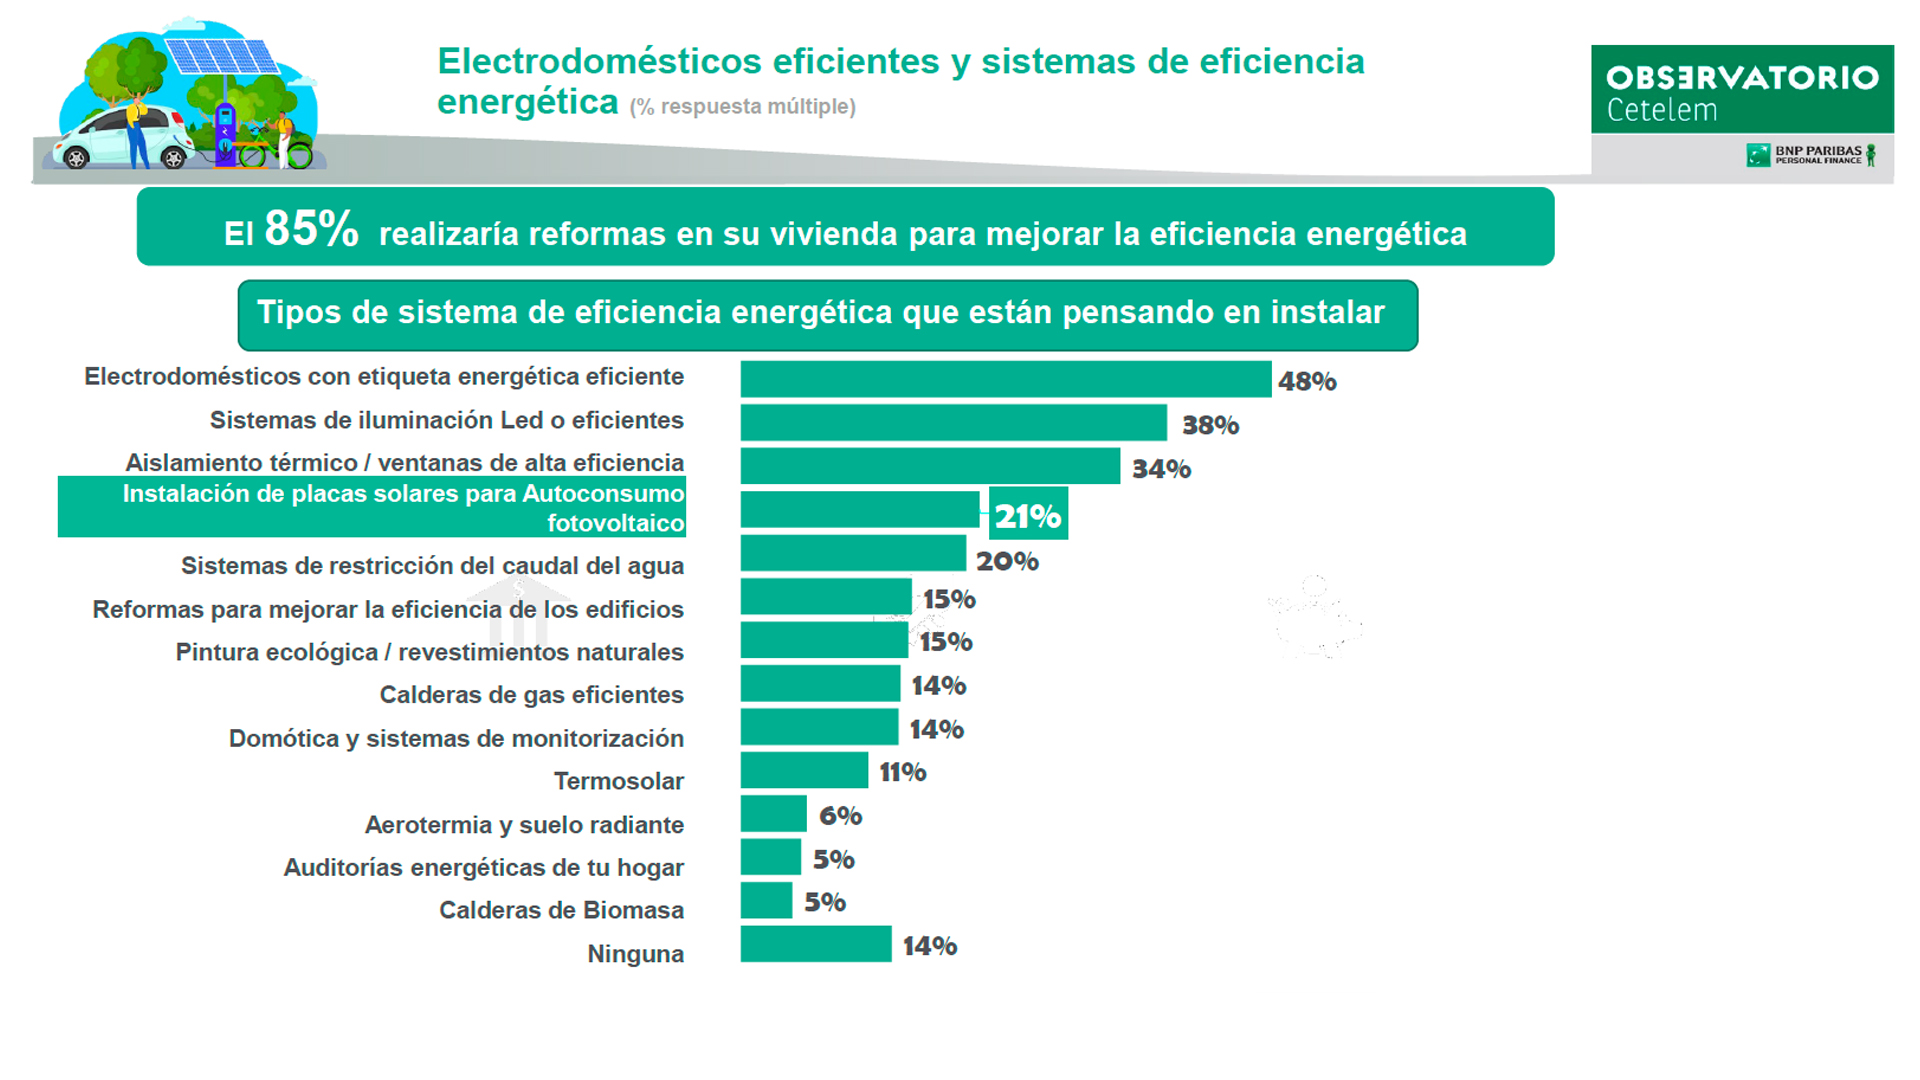 El 50% de los consumidores quieren electrodomésticos con etiqueta energética eficiente